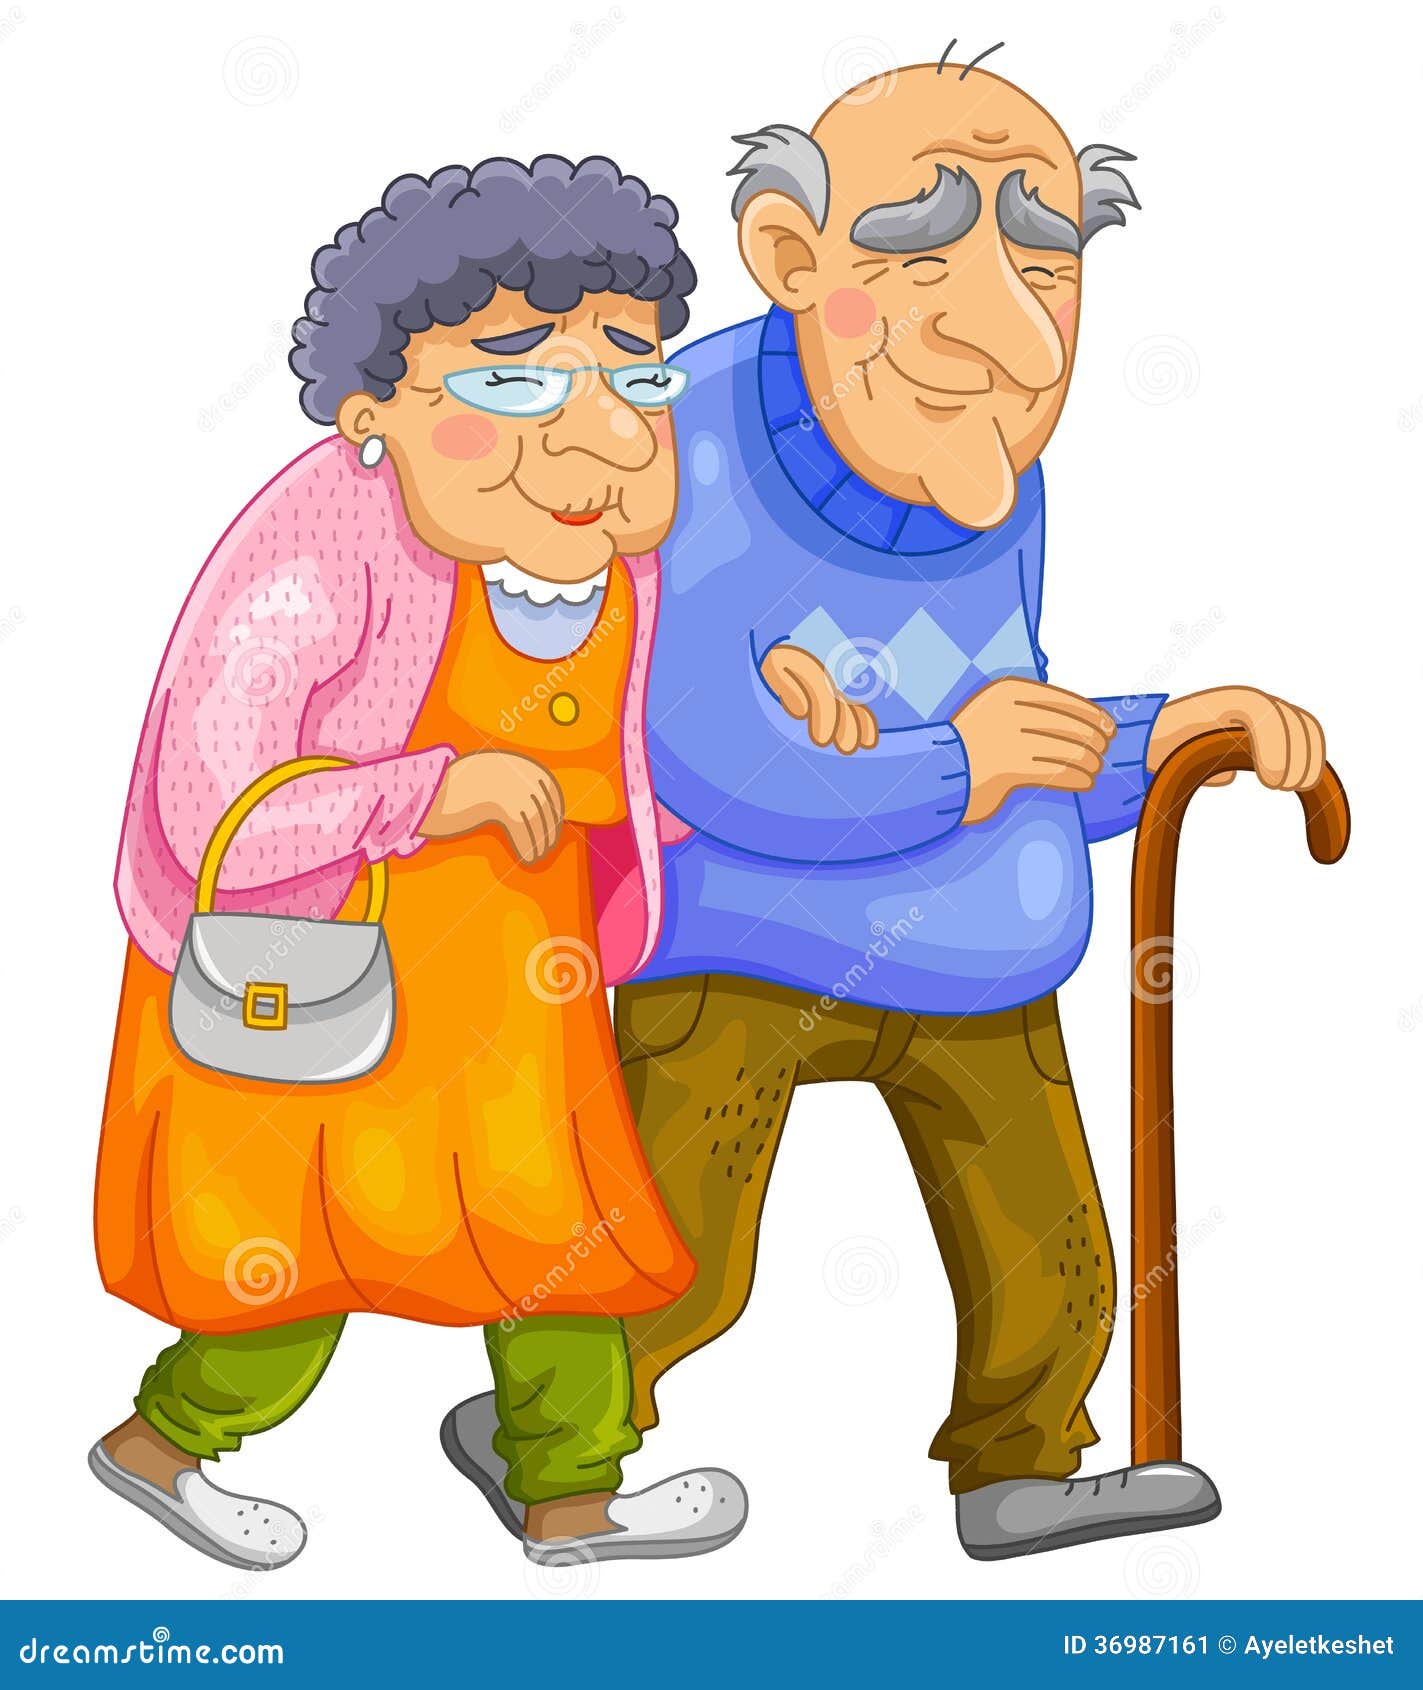 agnes bilocura add old couples cartoon images photo